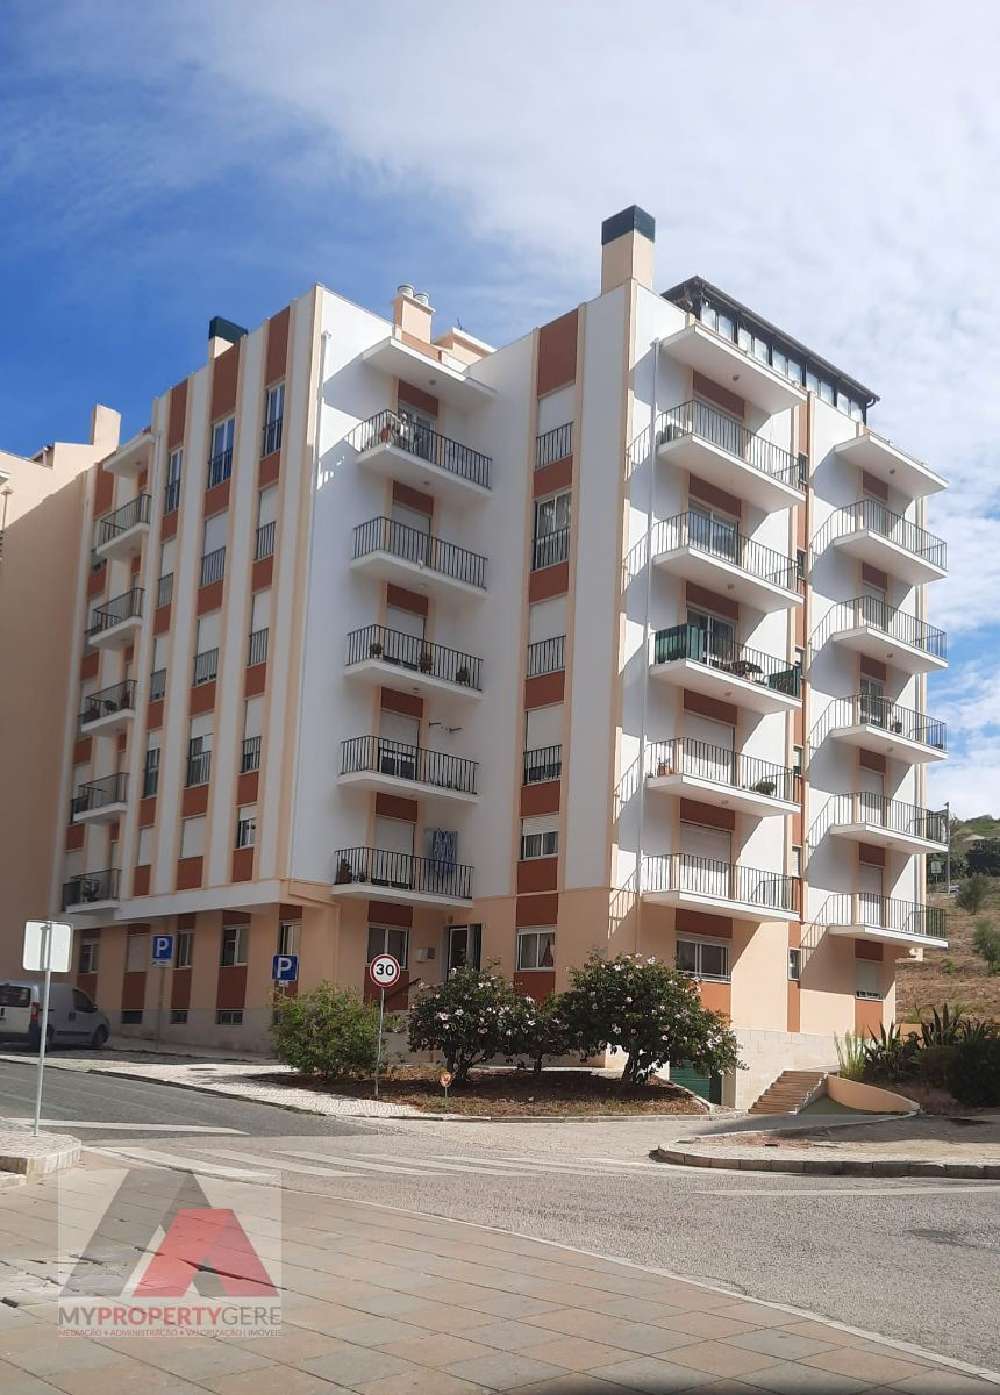 Matacães Torres Vedras 公寓 照片 #request.properties.id#